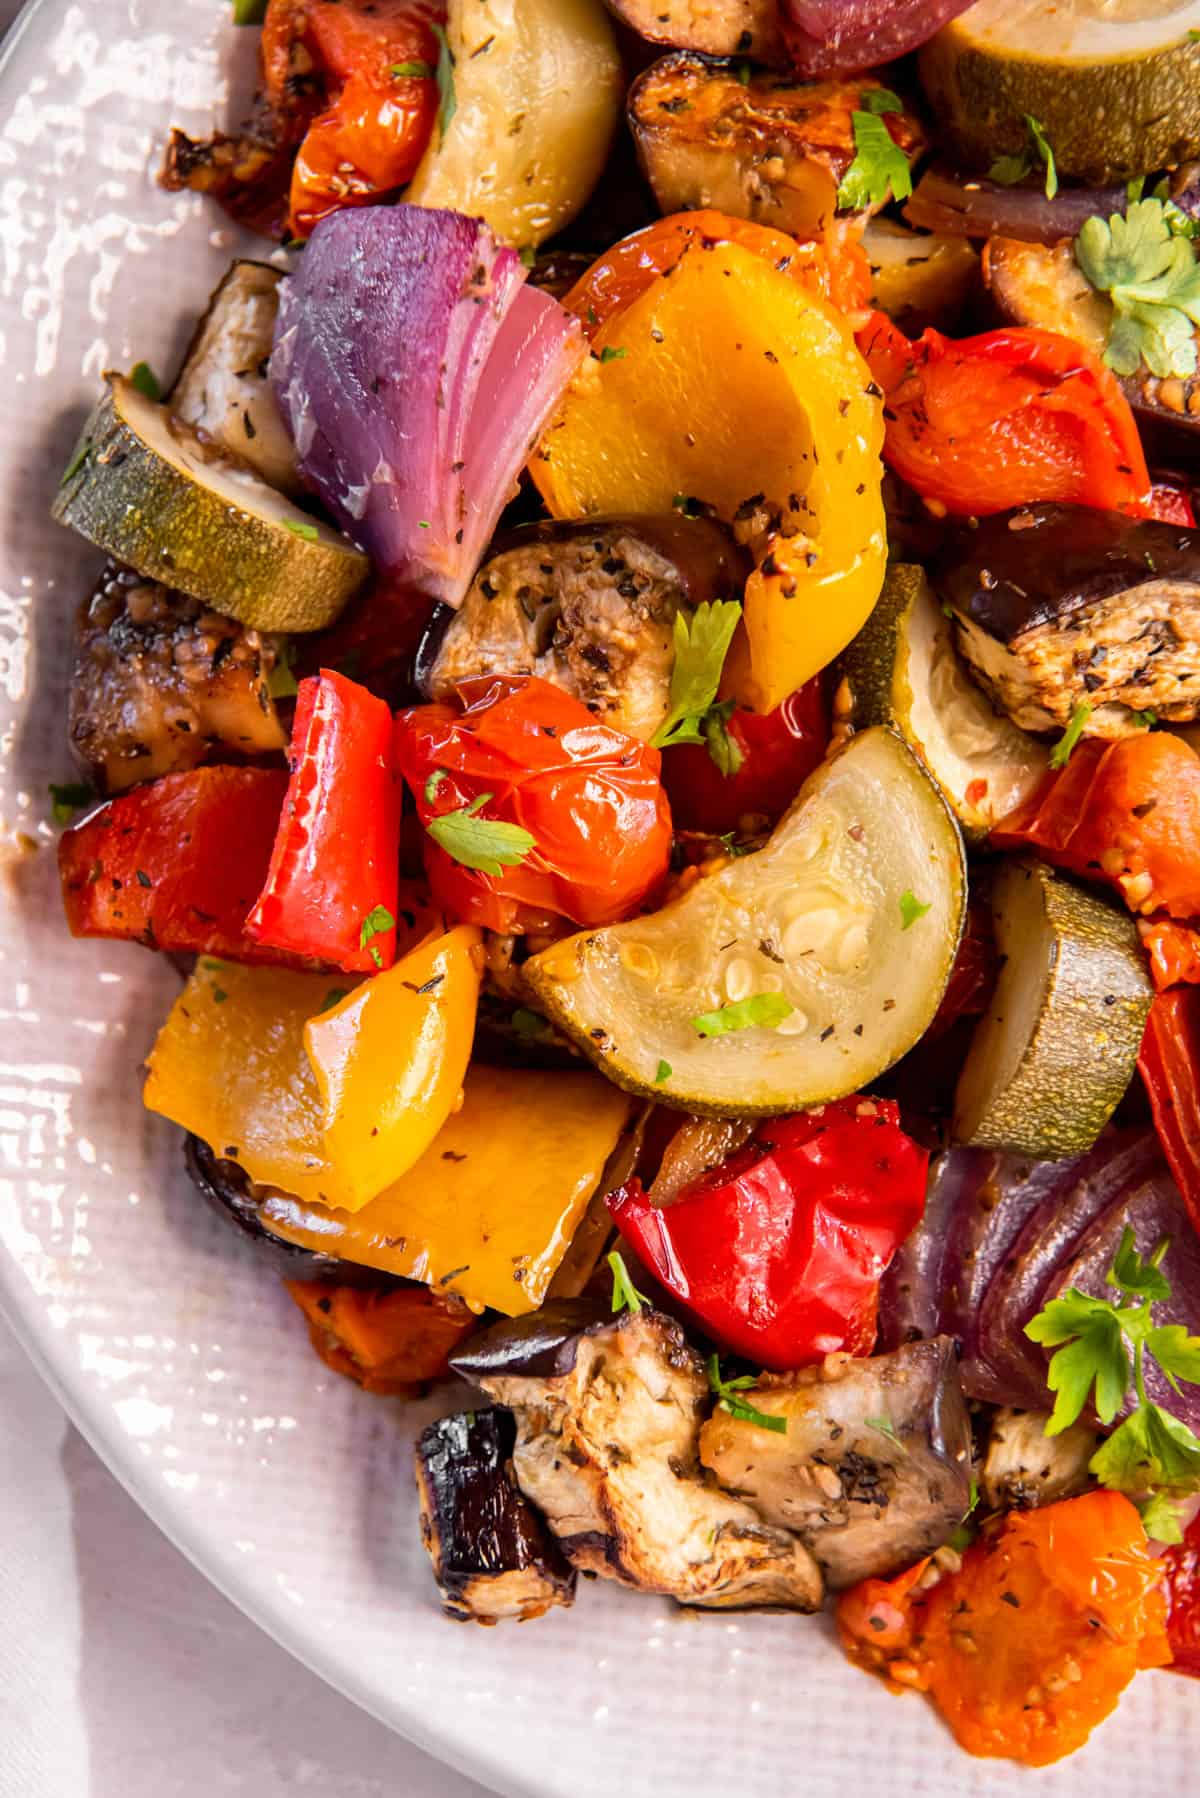 Une assiette remplie de légumes rôtis méditerranéens pour le service.